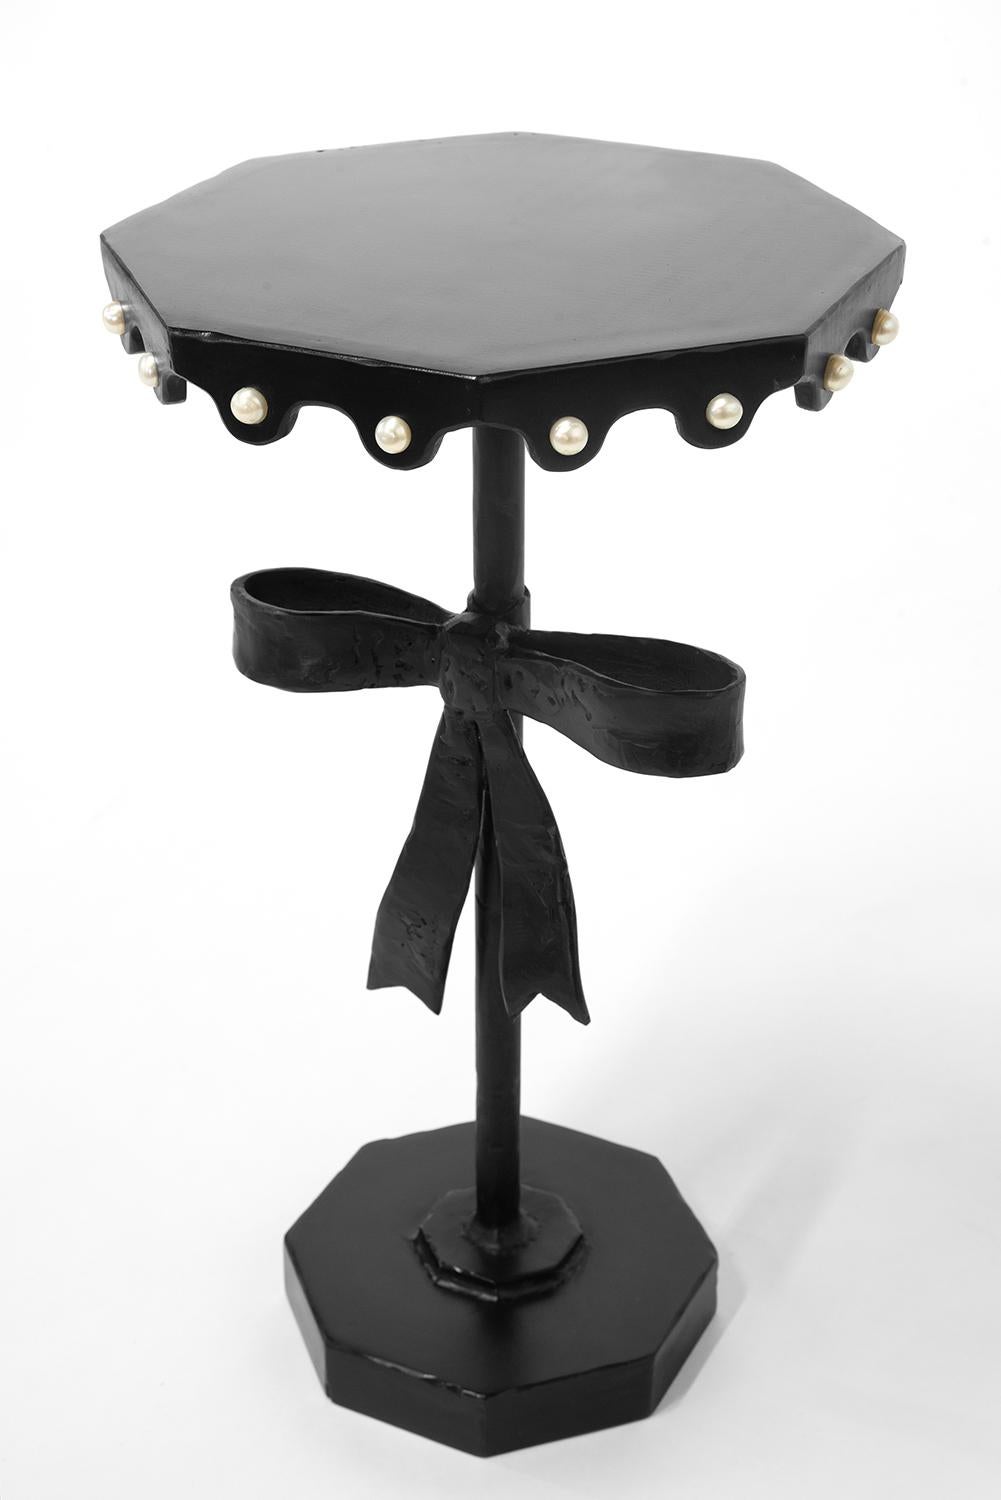 Tableau n° 16 
A&M. Szymanski
d. 2023
 
Cette sculpture de table unique est habillée pour une occasion spéciale. Elle est sculptée à la main dans du fer et est associée à des perles précieuses de l'océan. Elle servira avec passion votre cocktail ou